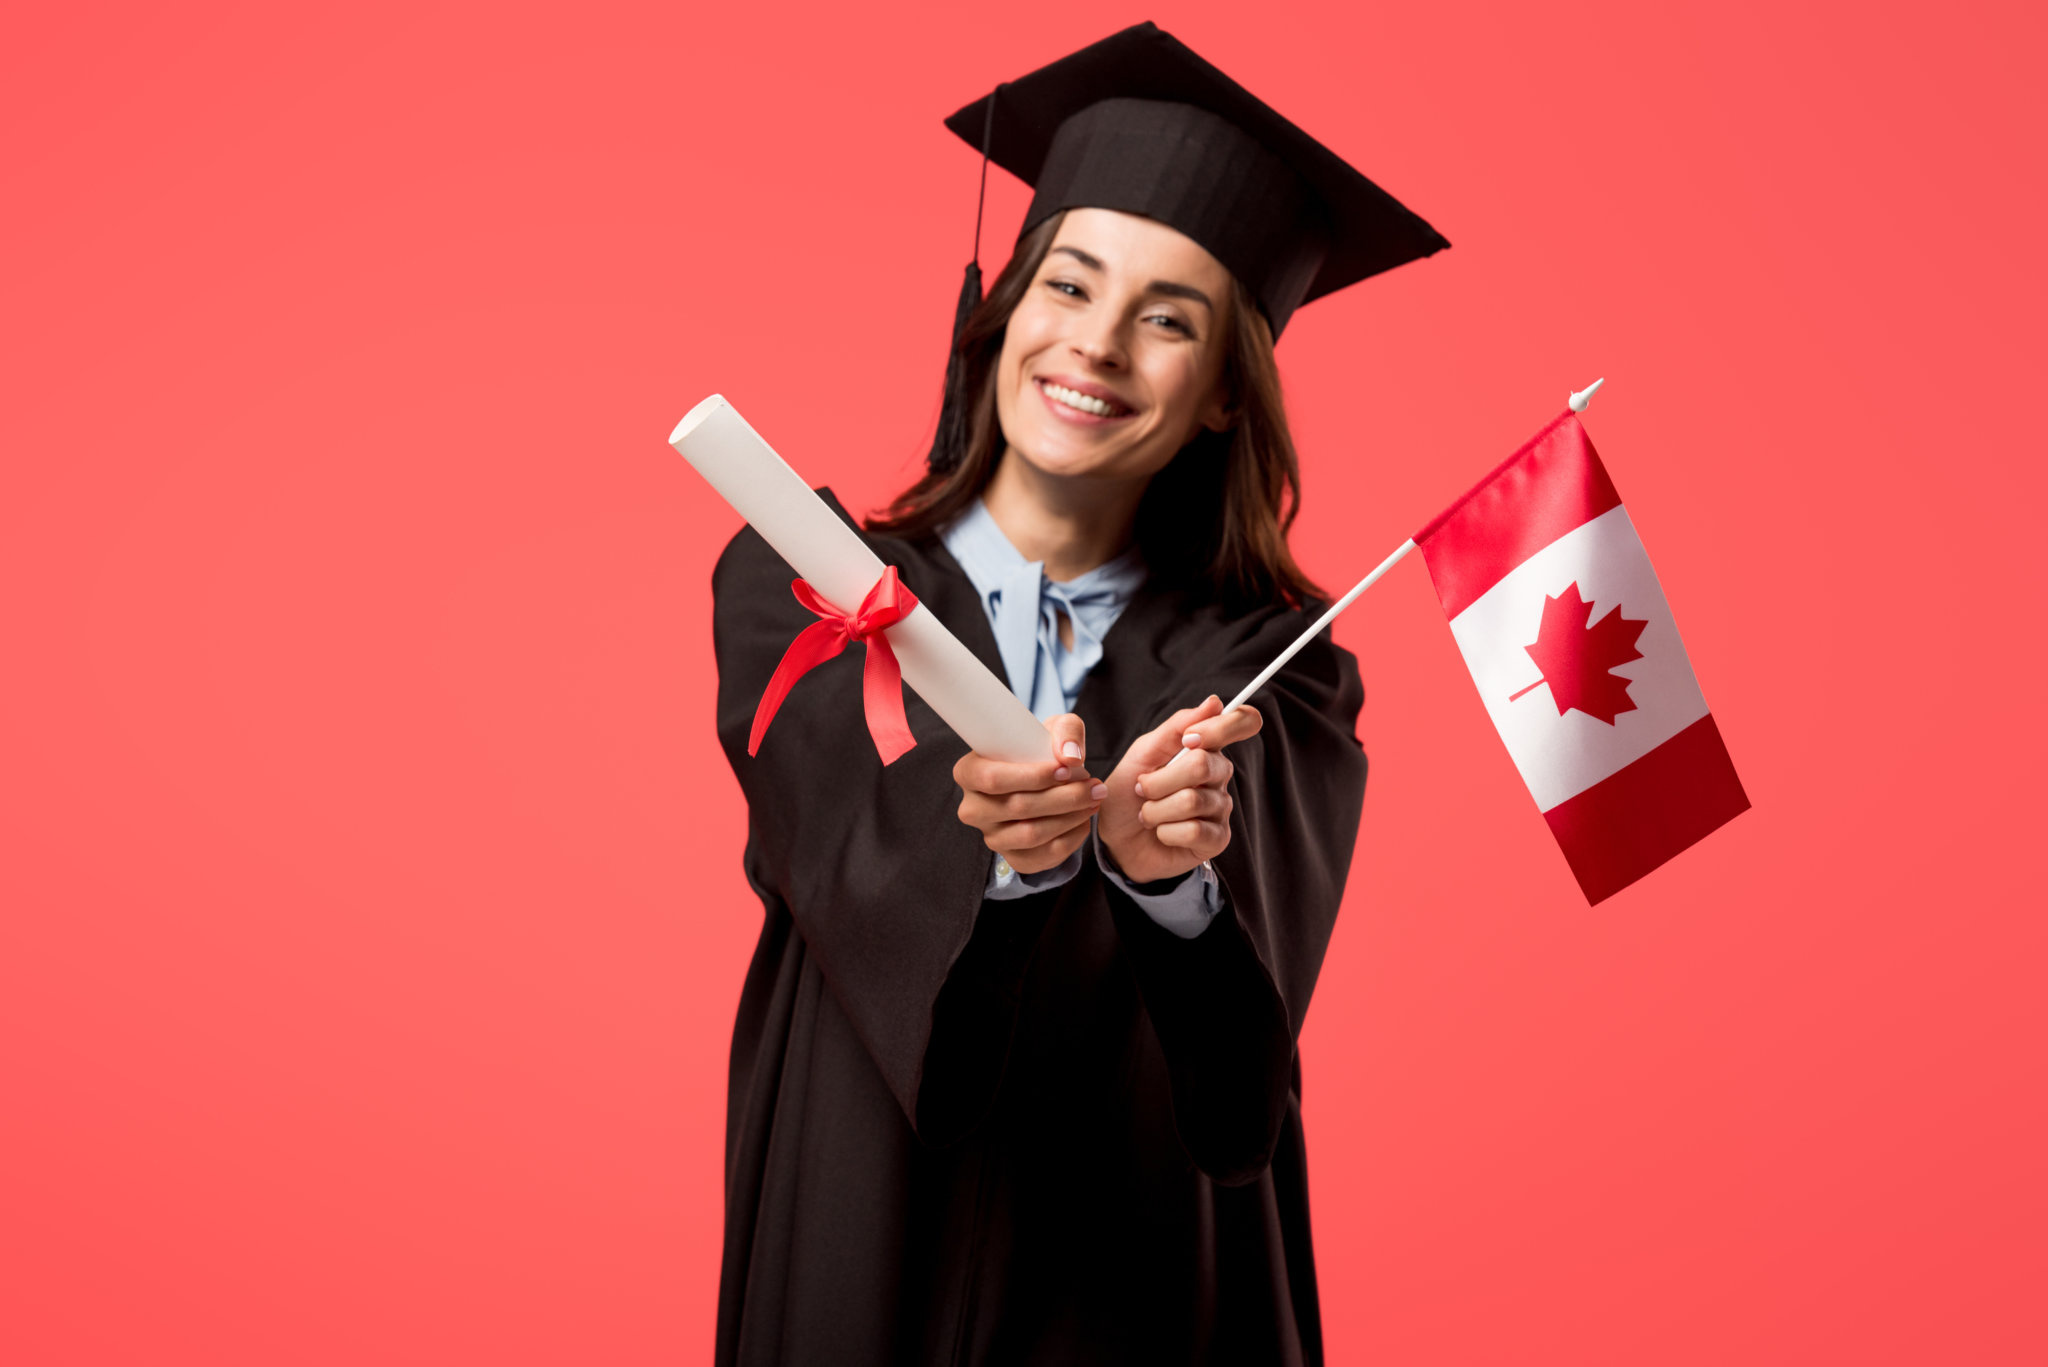 Образование в канаде: особенности обучения для русских и других иностранцев, стоимость, гранты